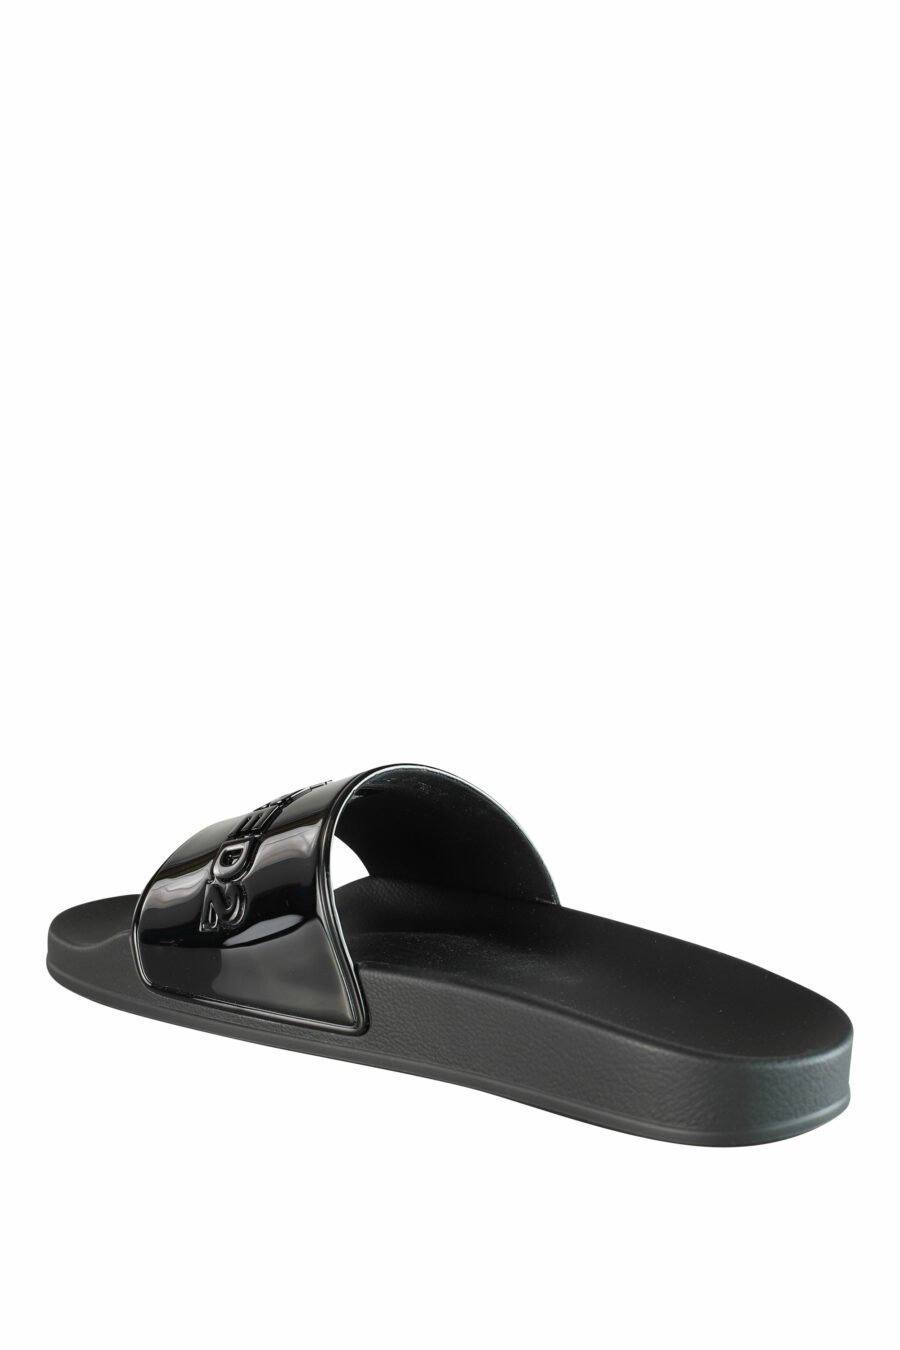 Glänzende schwarze Flip Flops mit schwarzem Maxilogo - IMG 1338